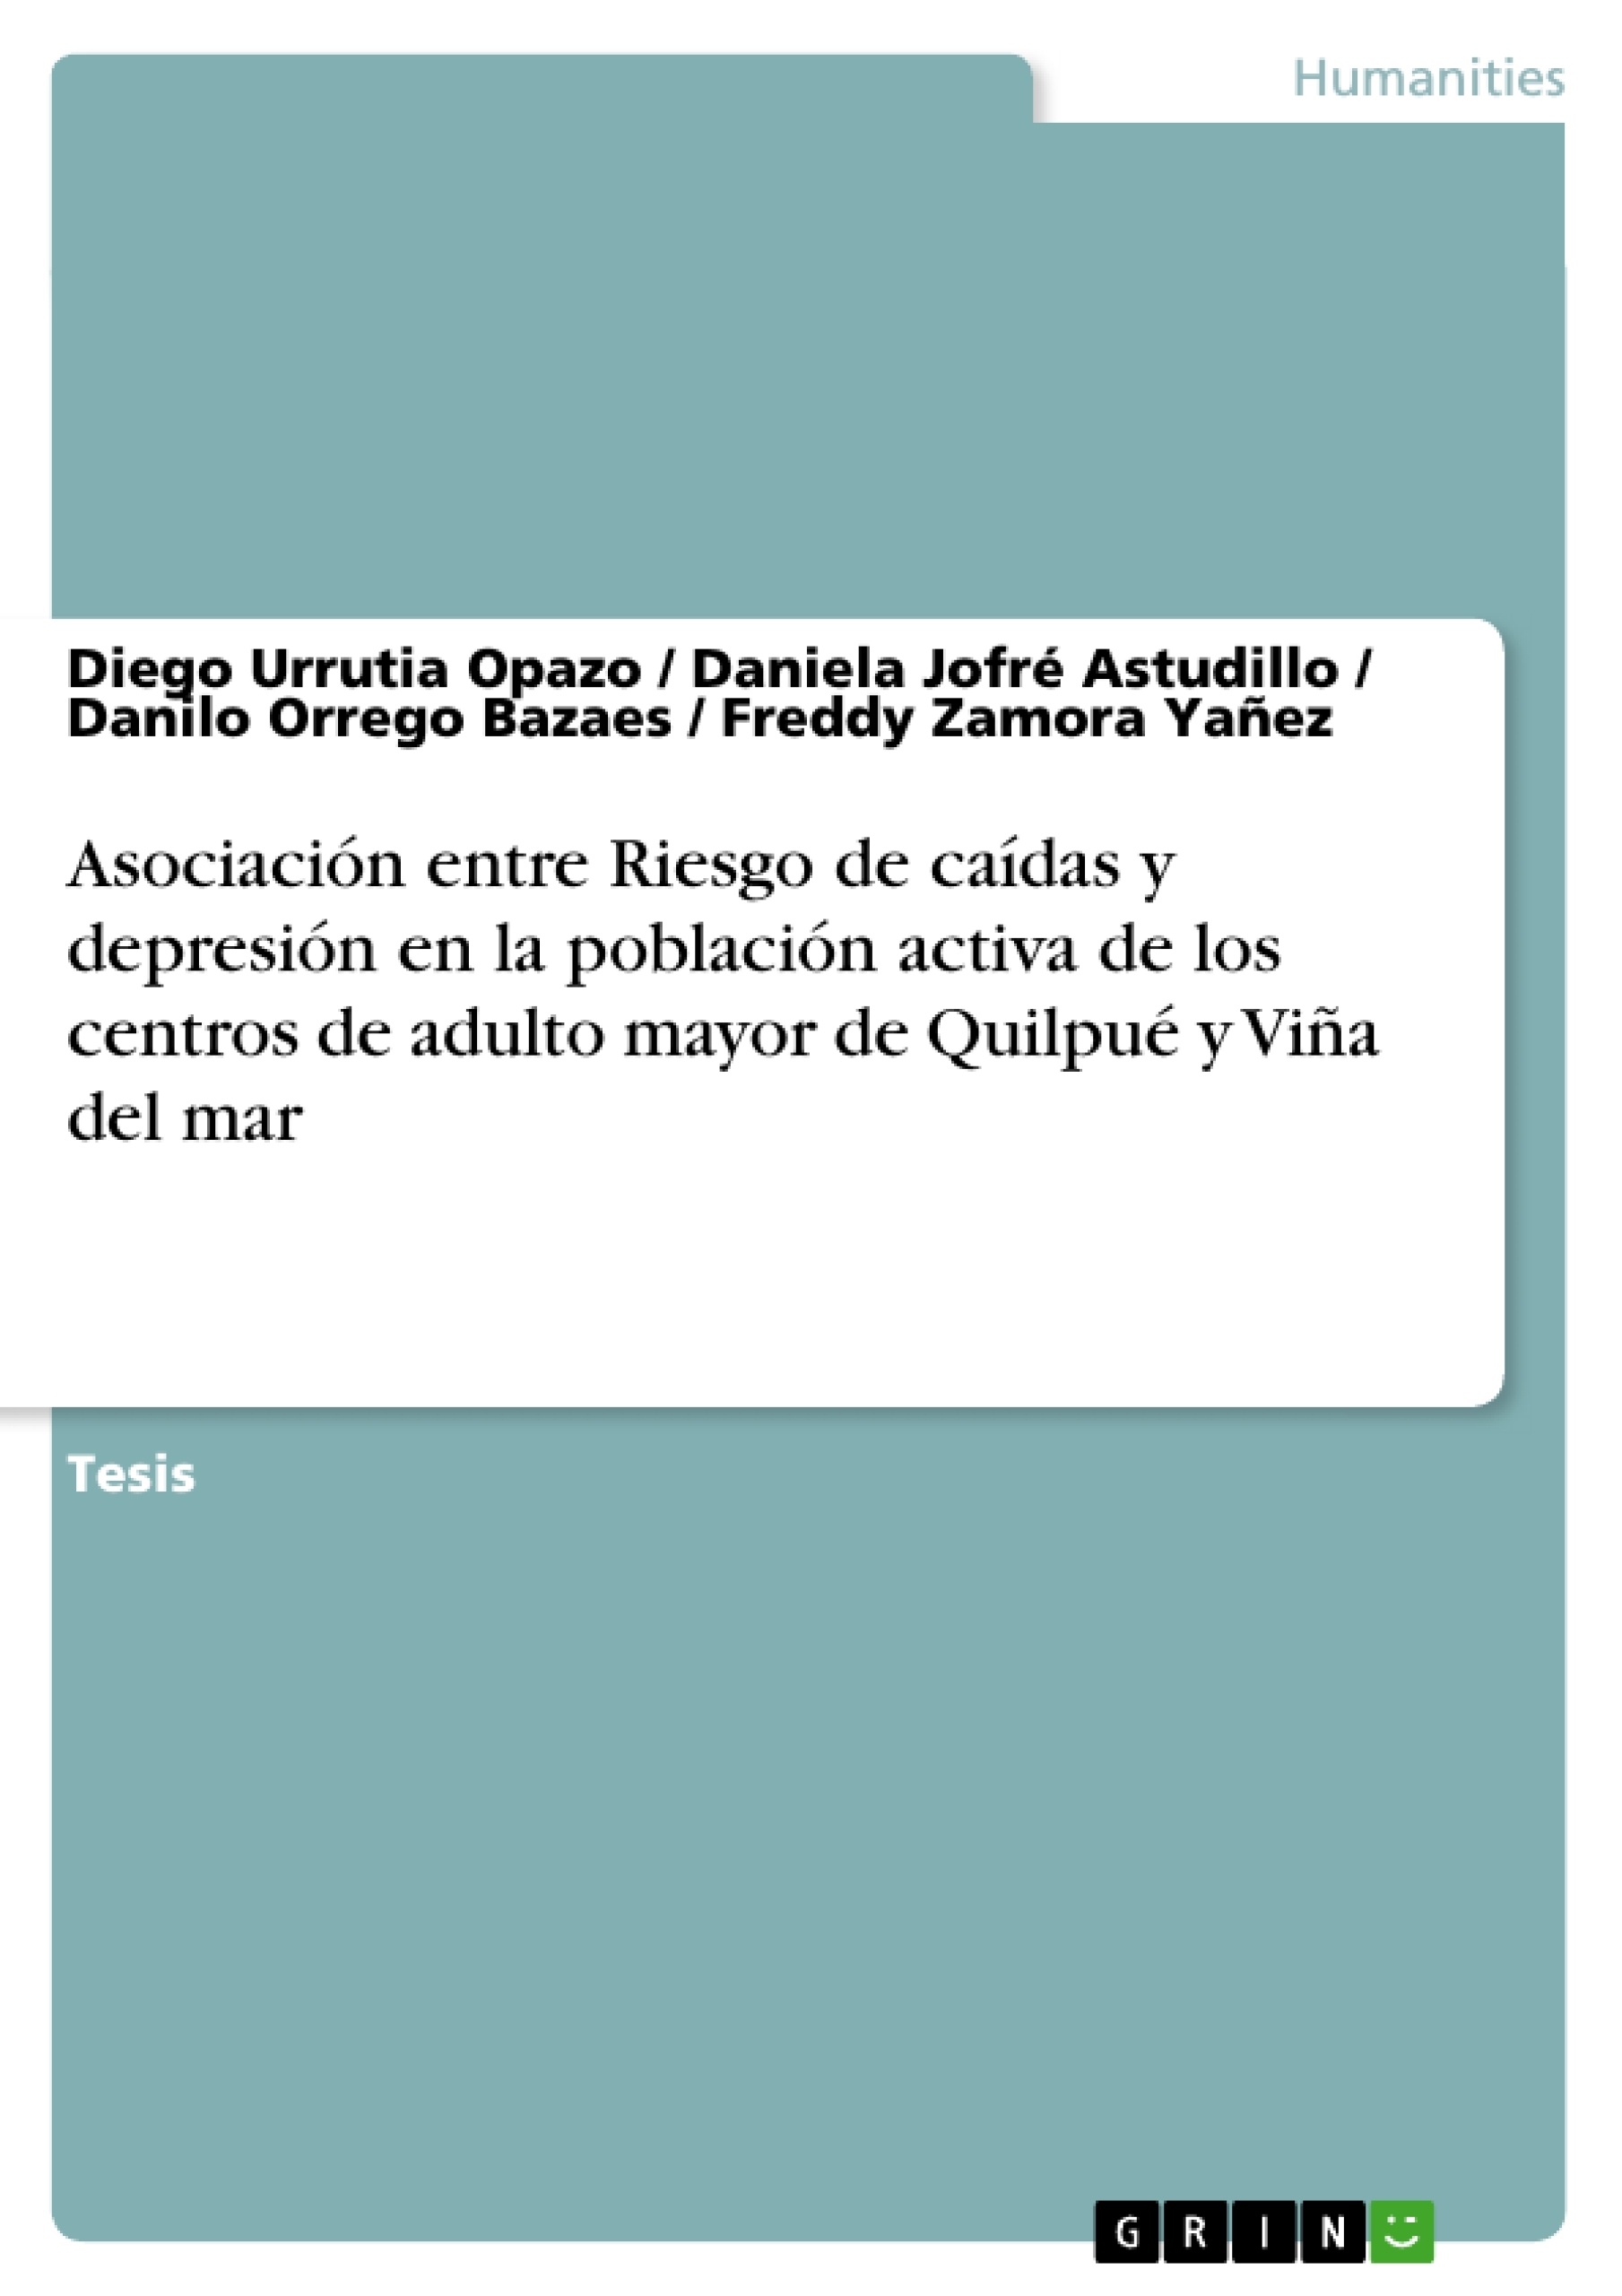 Title: Asociación entre Riesgo de caídas y depresión en la población activa de los centros de adulto mayor de Quilpué y Viña del mar